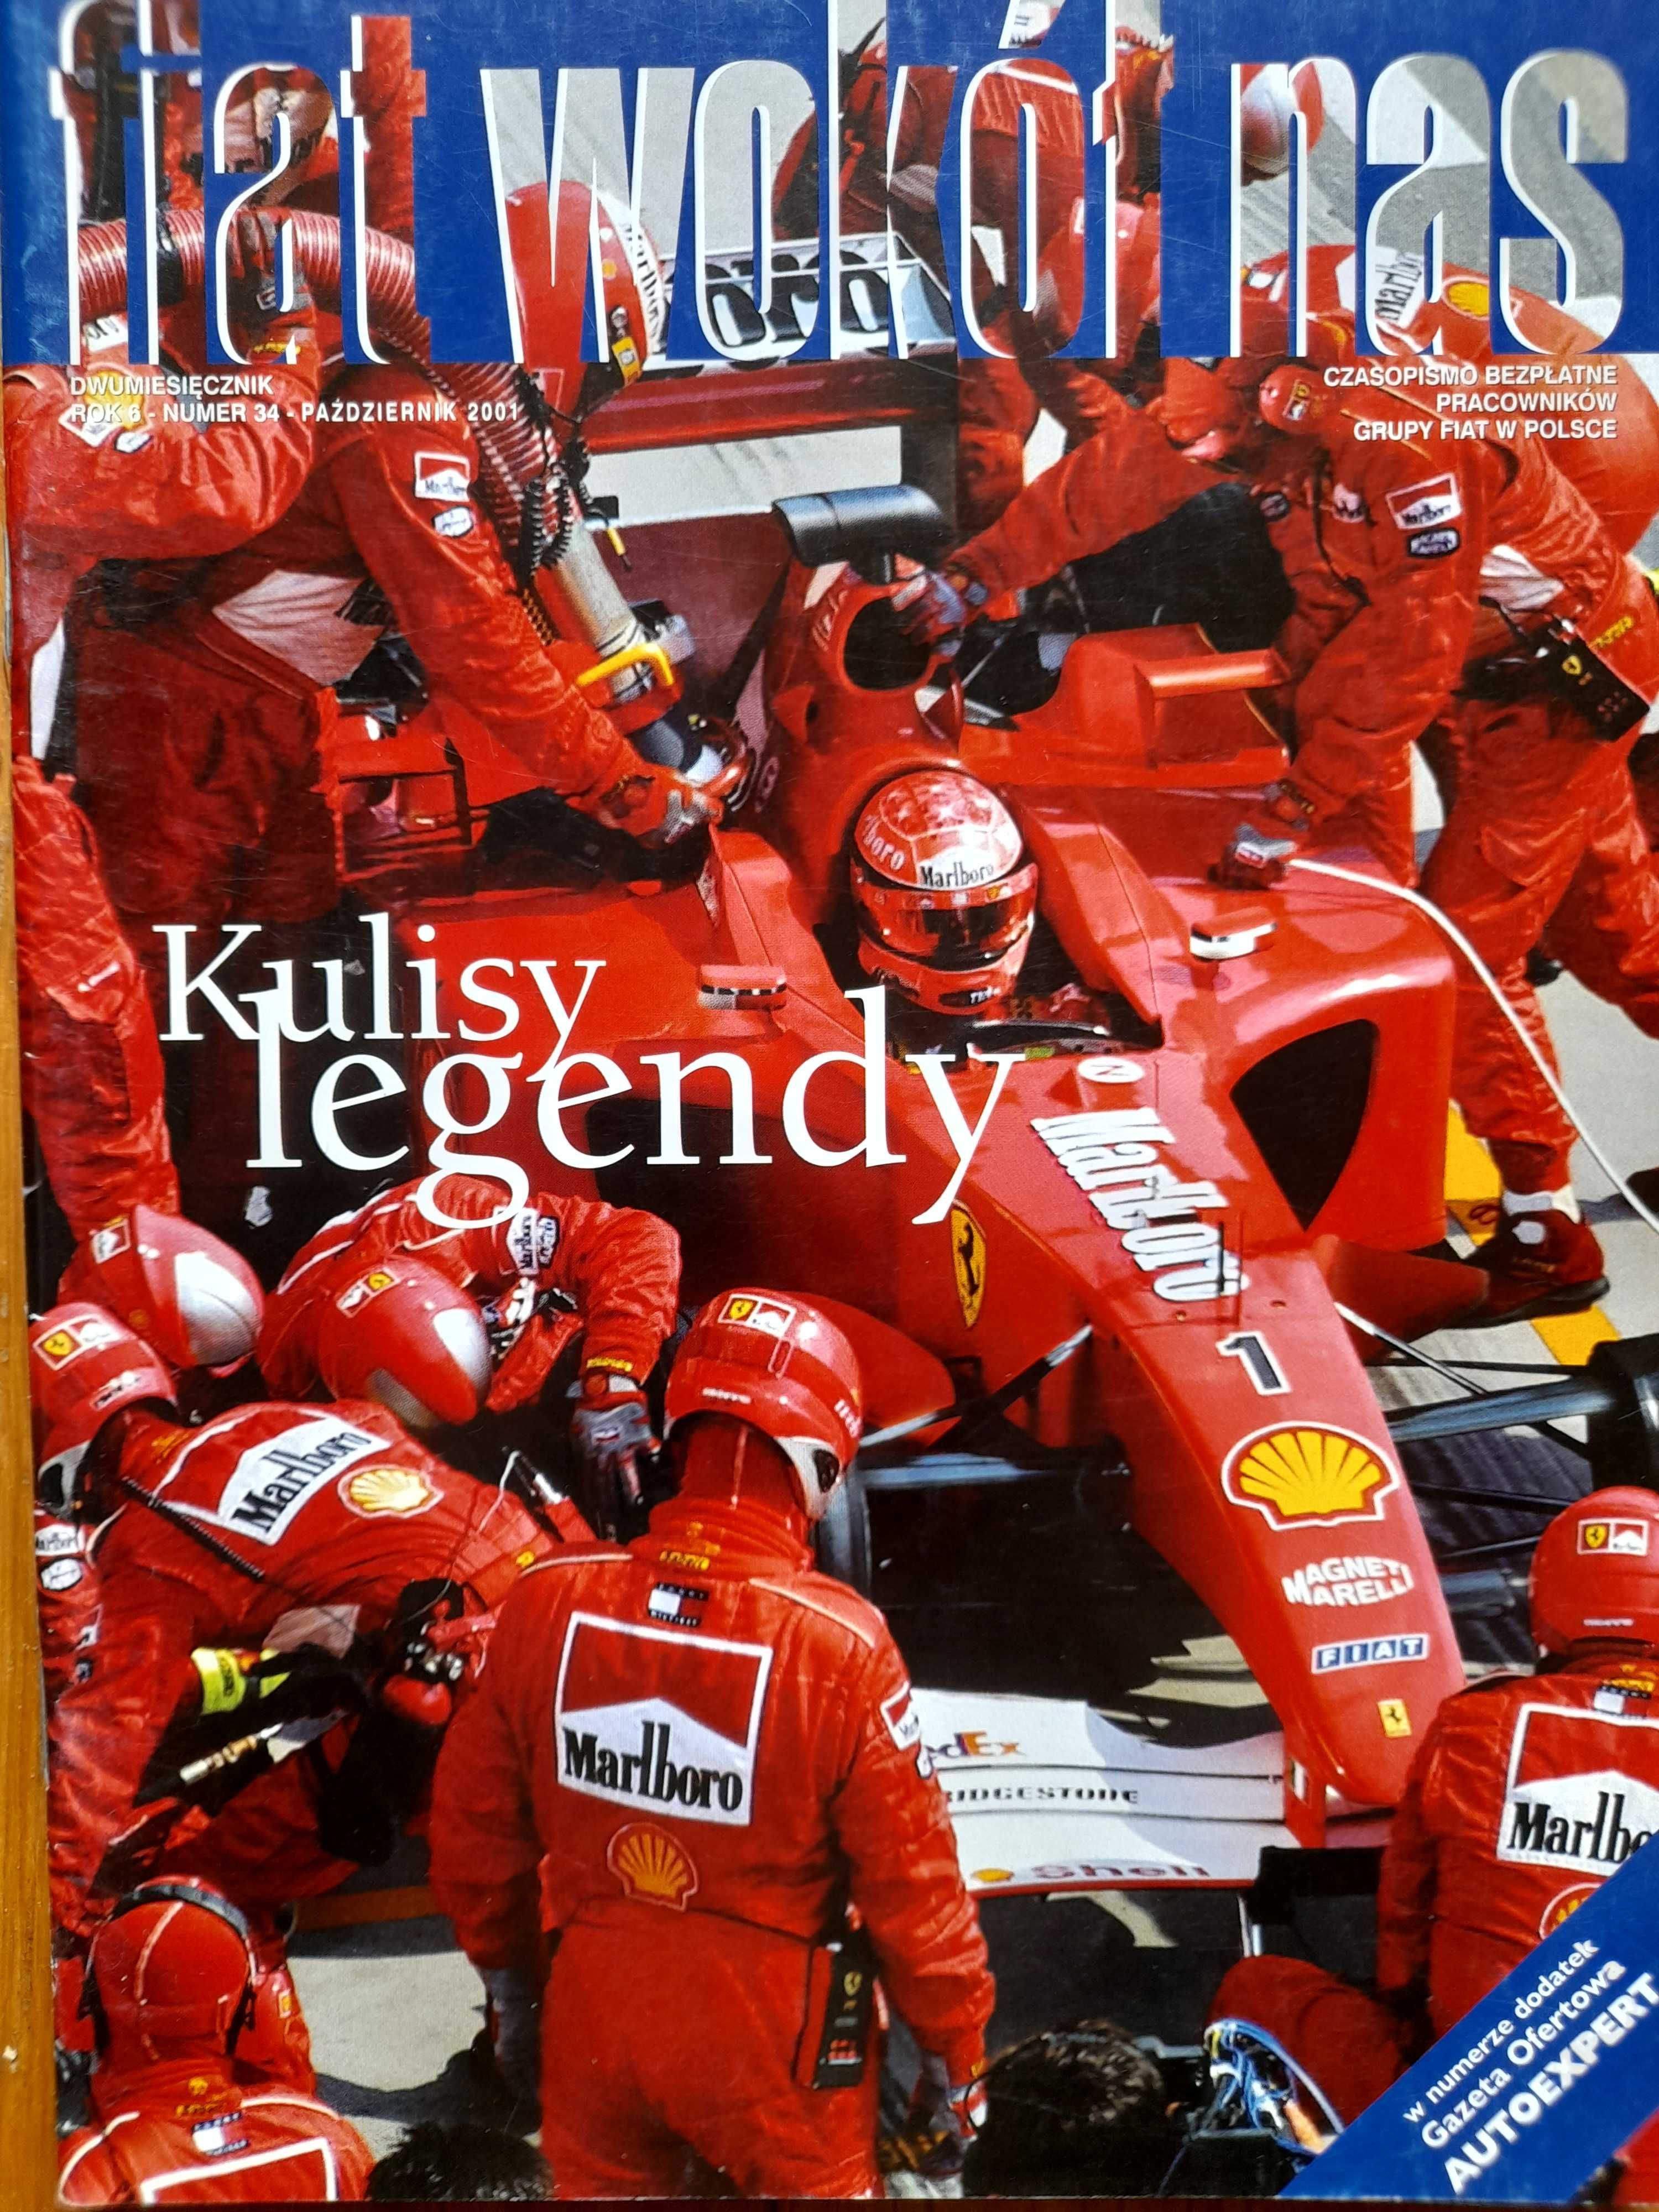 Fiat wokół nas sezon Ferrari F1, Formuła 1 rok 2001